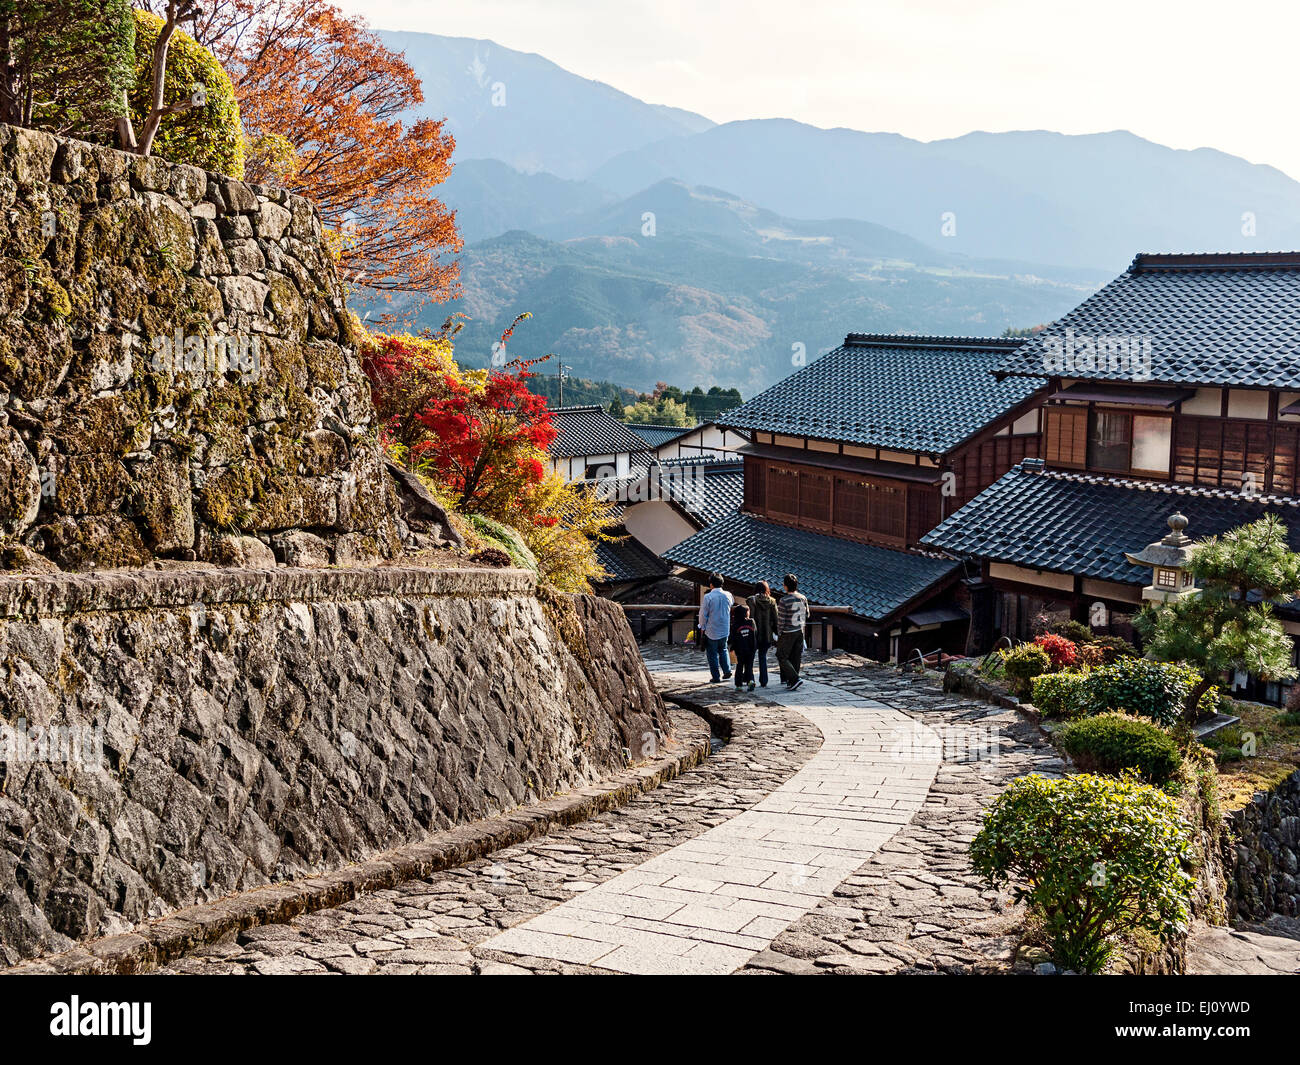 Magome juku, vallée de Kiso, préfecture de Gifu, Japon. Ville de poste le long de Kisoji Trail et Nakasendo Trail. Paysage japonais traditionnel. Banque D'Images